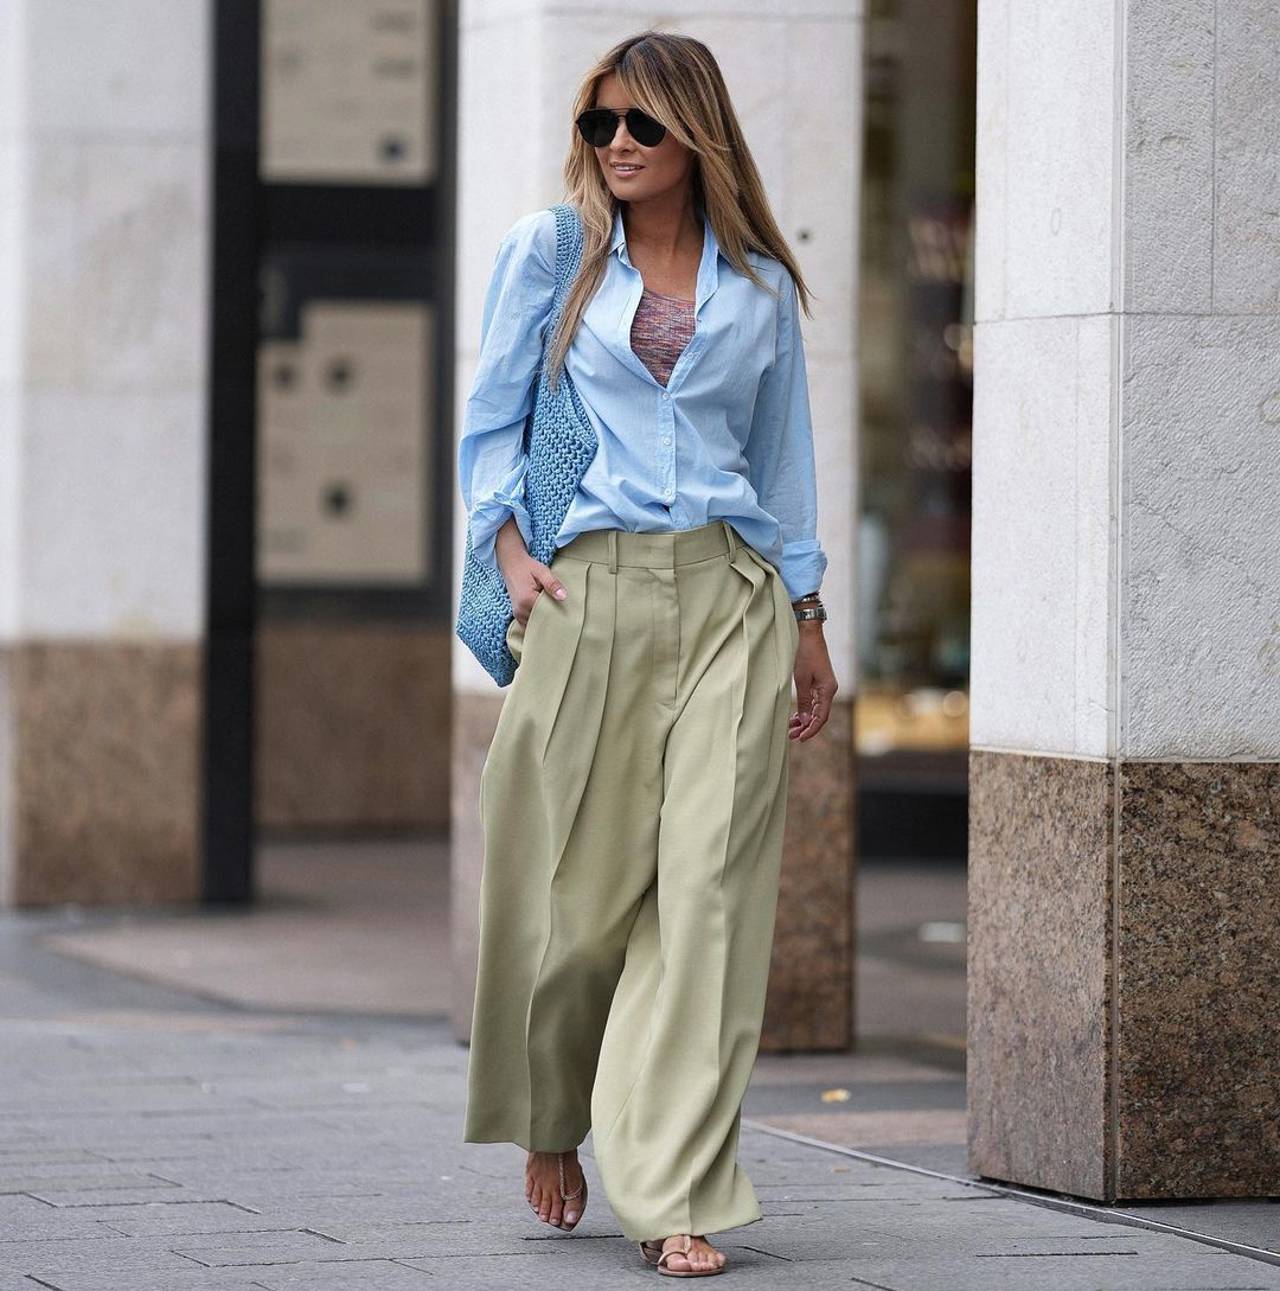 Mariscos Baya Hollywood 10 pantalones de vestir de Zara básicos que hacen tipazo y no marcan para  ir cómoda y elegante